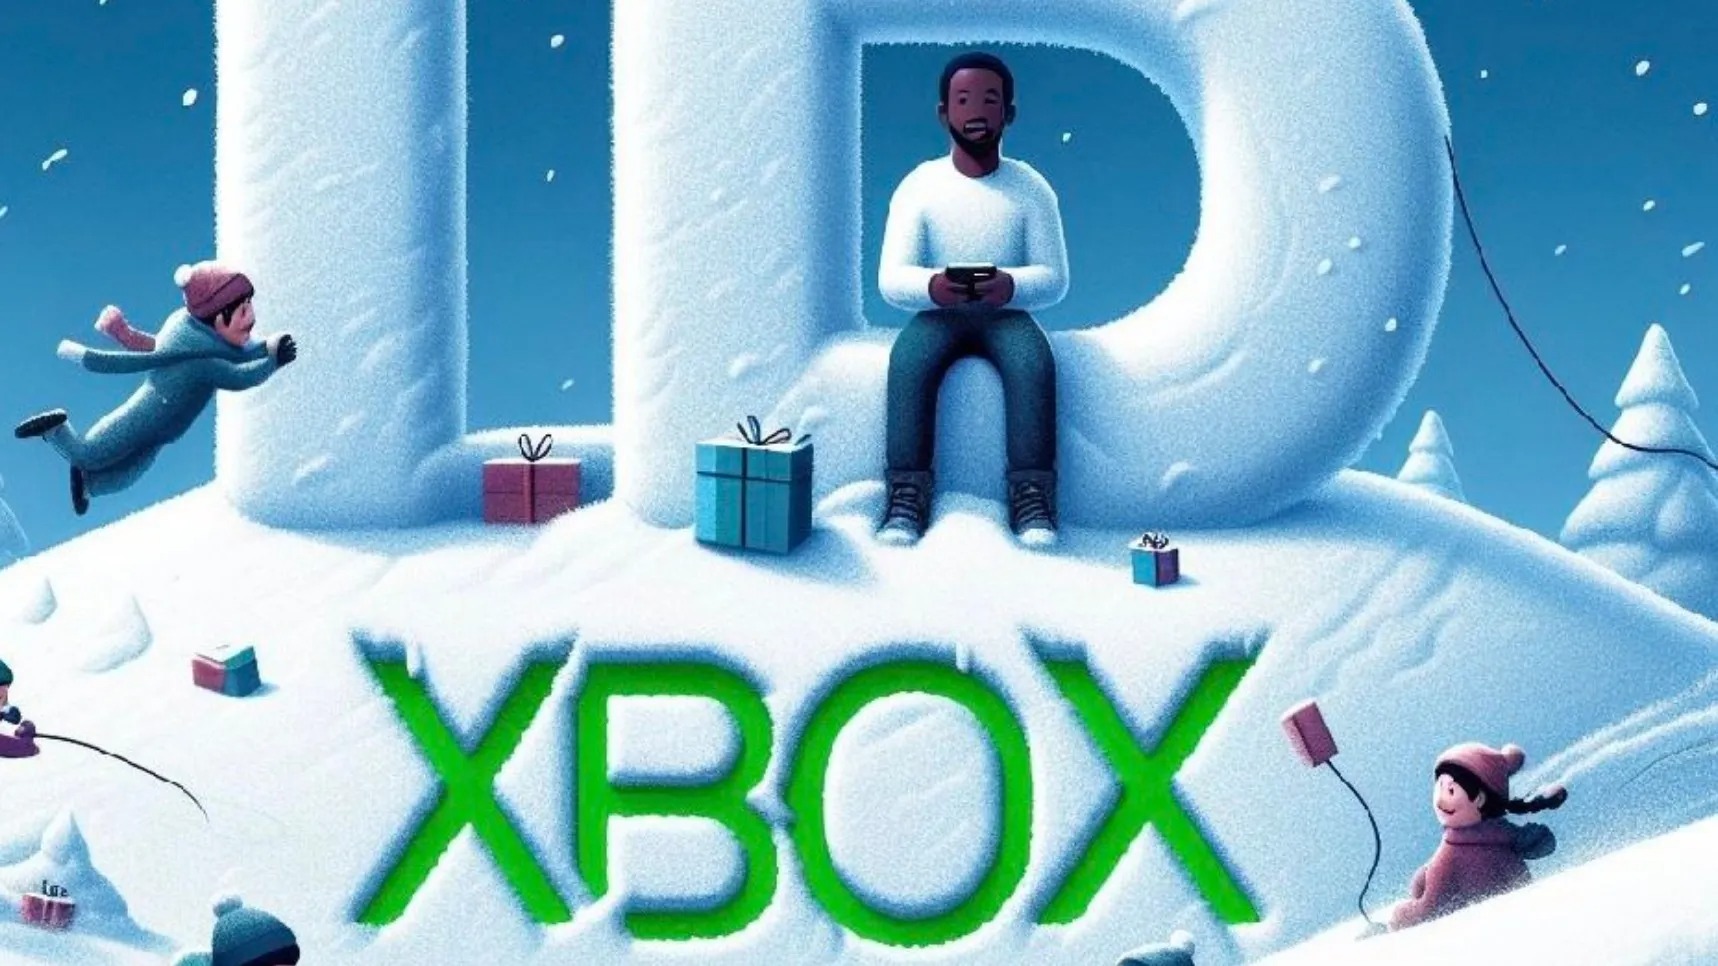 Xbox官方账号因利用AI图片宣传遭谴责